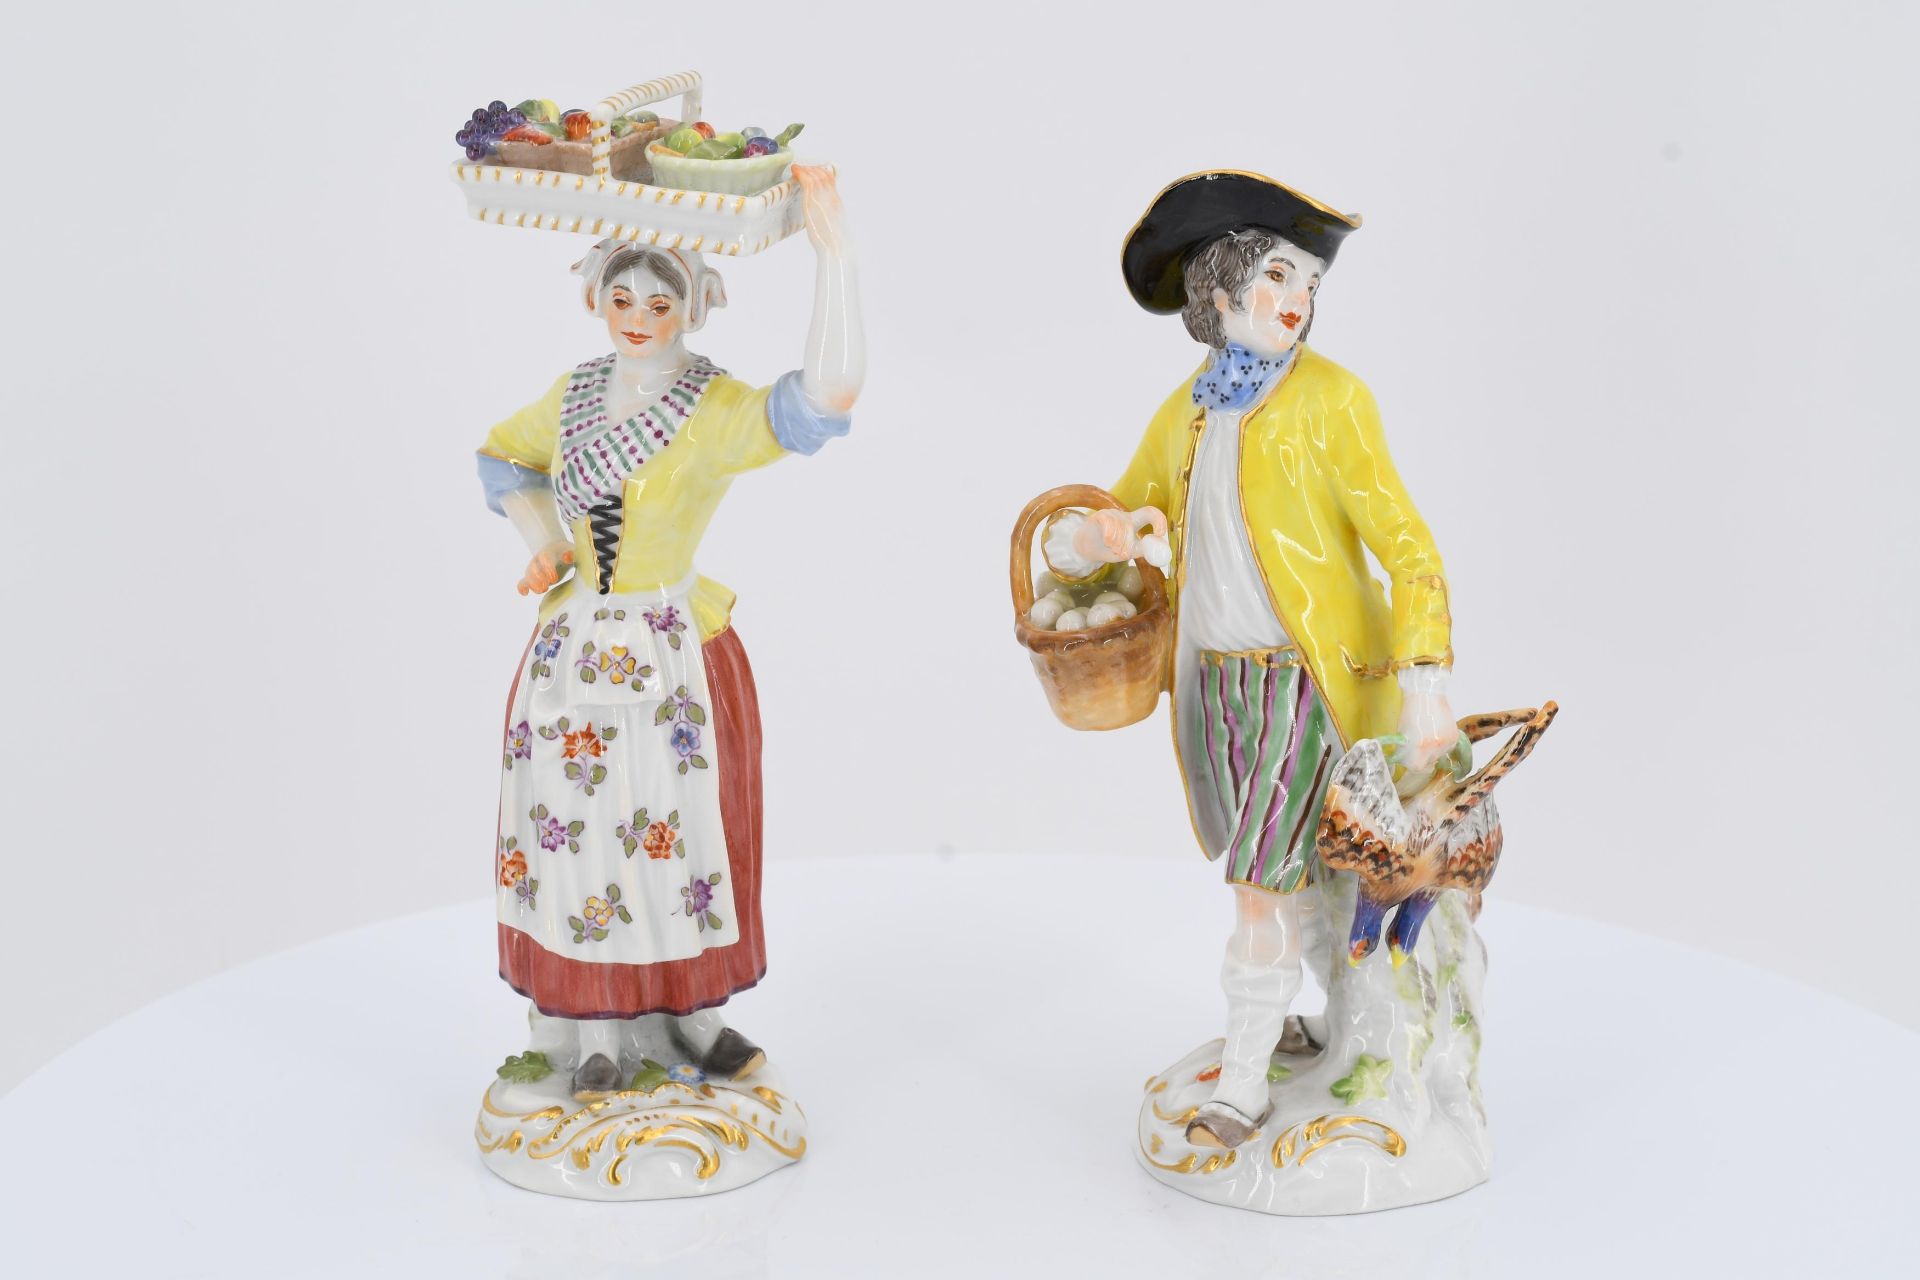 12 porcelain figurines from a series "Cris de Paris" - Image 27 of 27